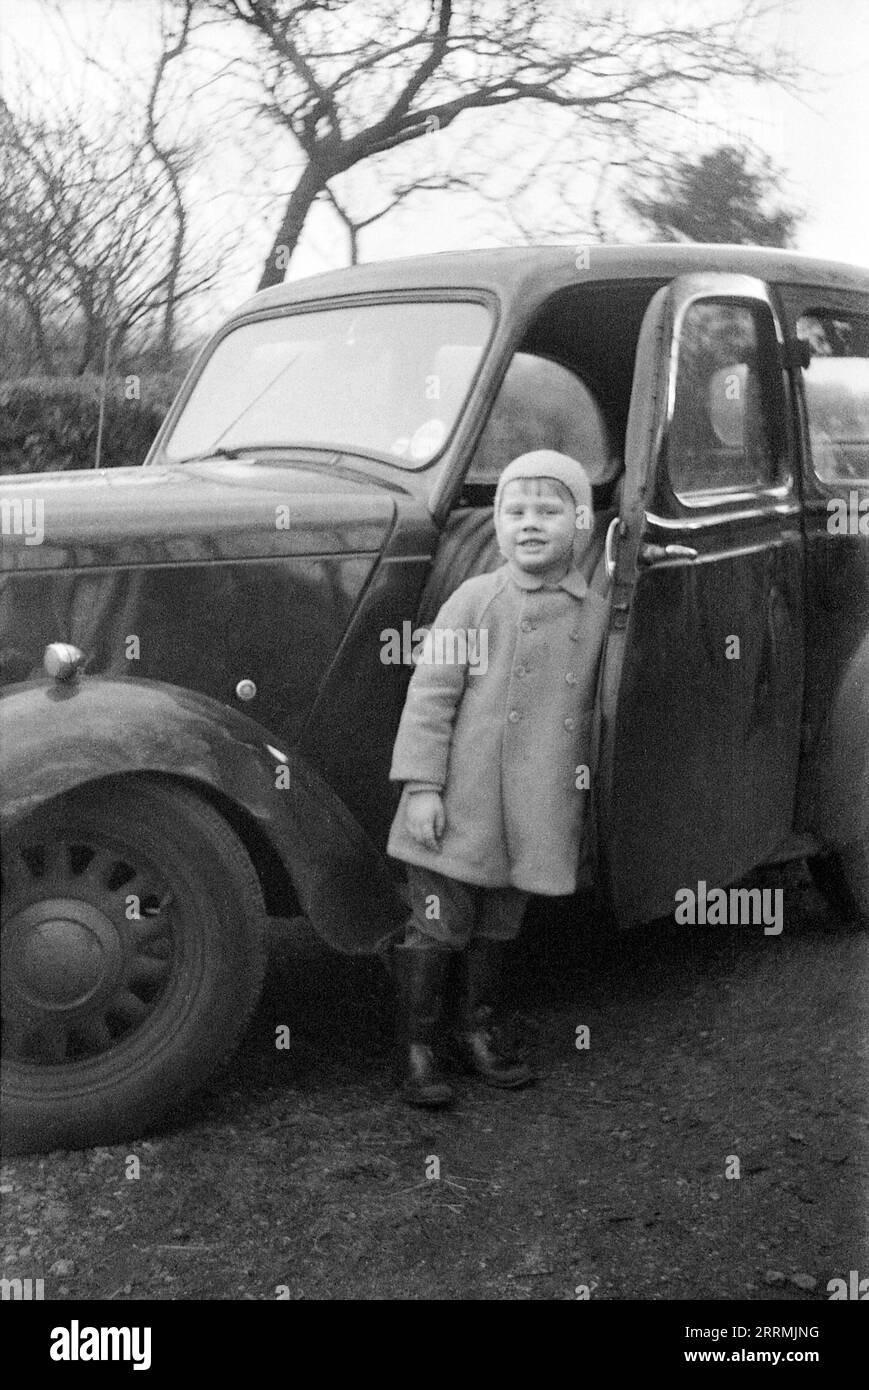 England. c.1960: Ein kleiner Junge mit Mantel, gummistiefeln und Wollmütze steht vor der offenen Tür eines Standard-Acht-Limousine-Wagens aus dem Jahr 1948. Stockfoto